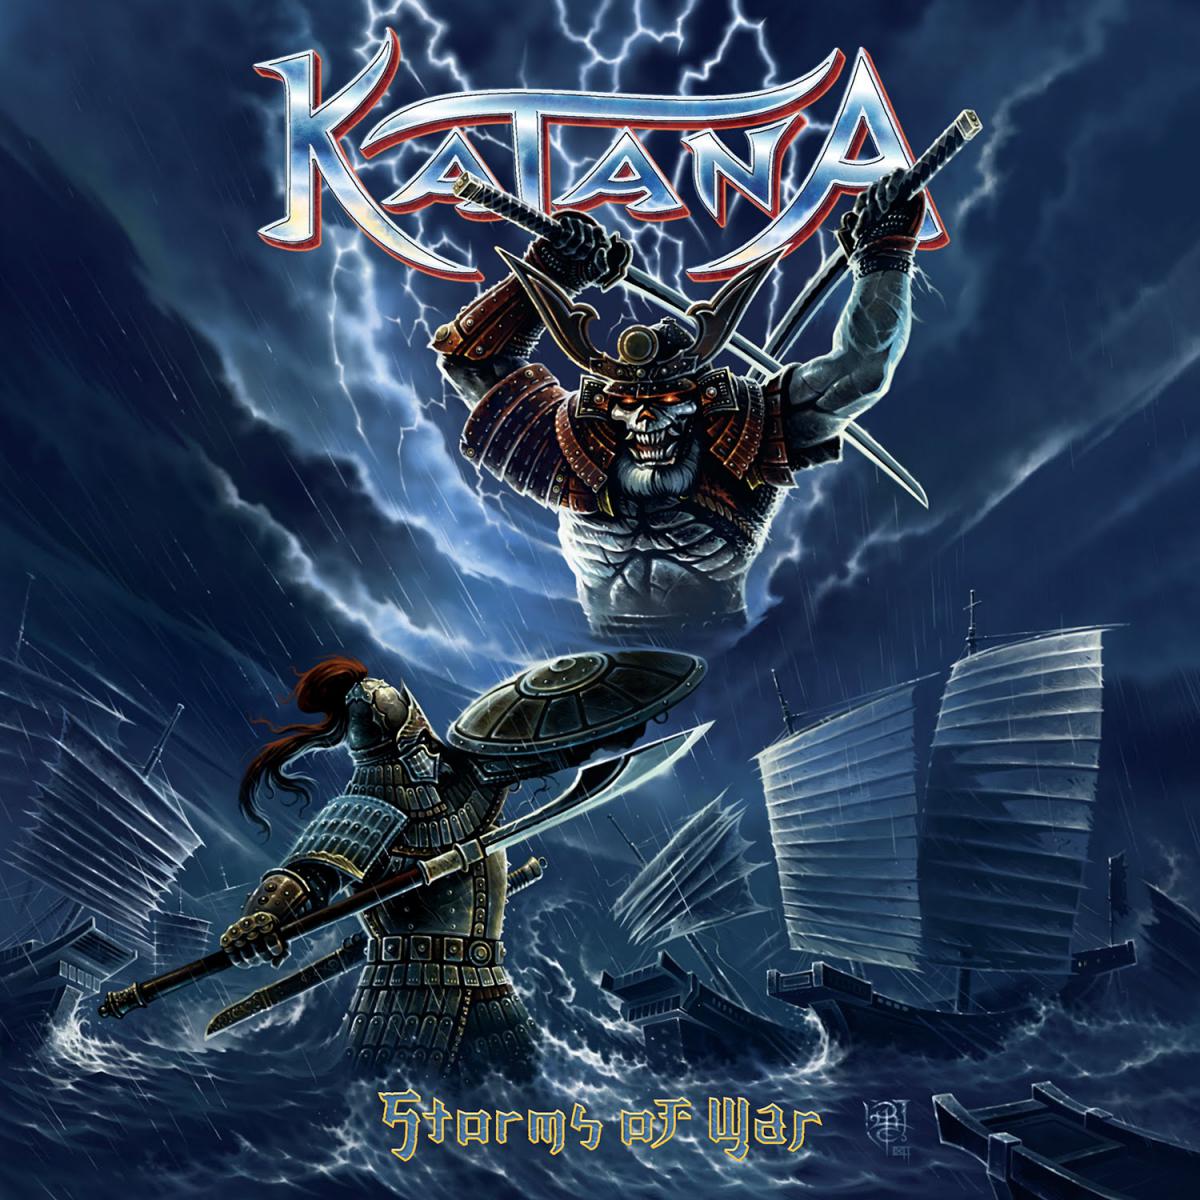 Katana - Storms of War 2012